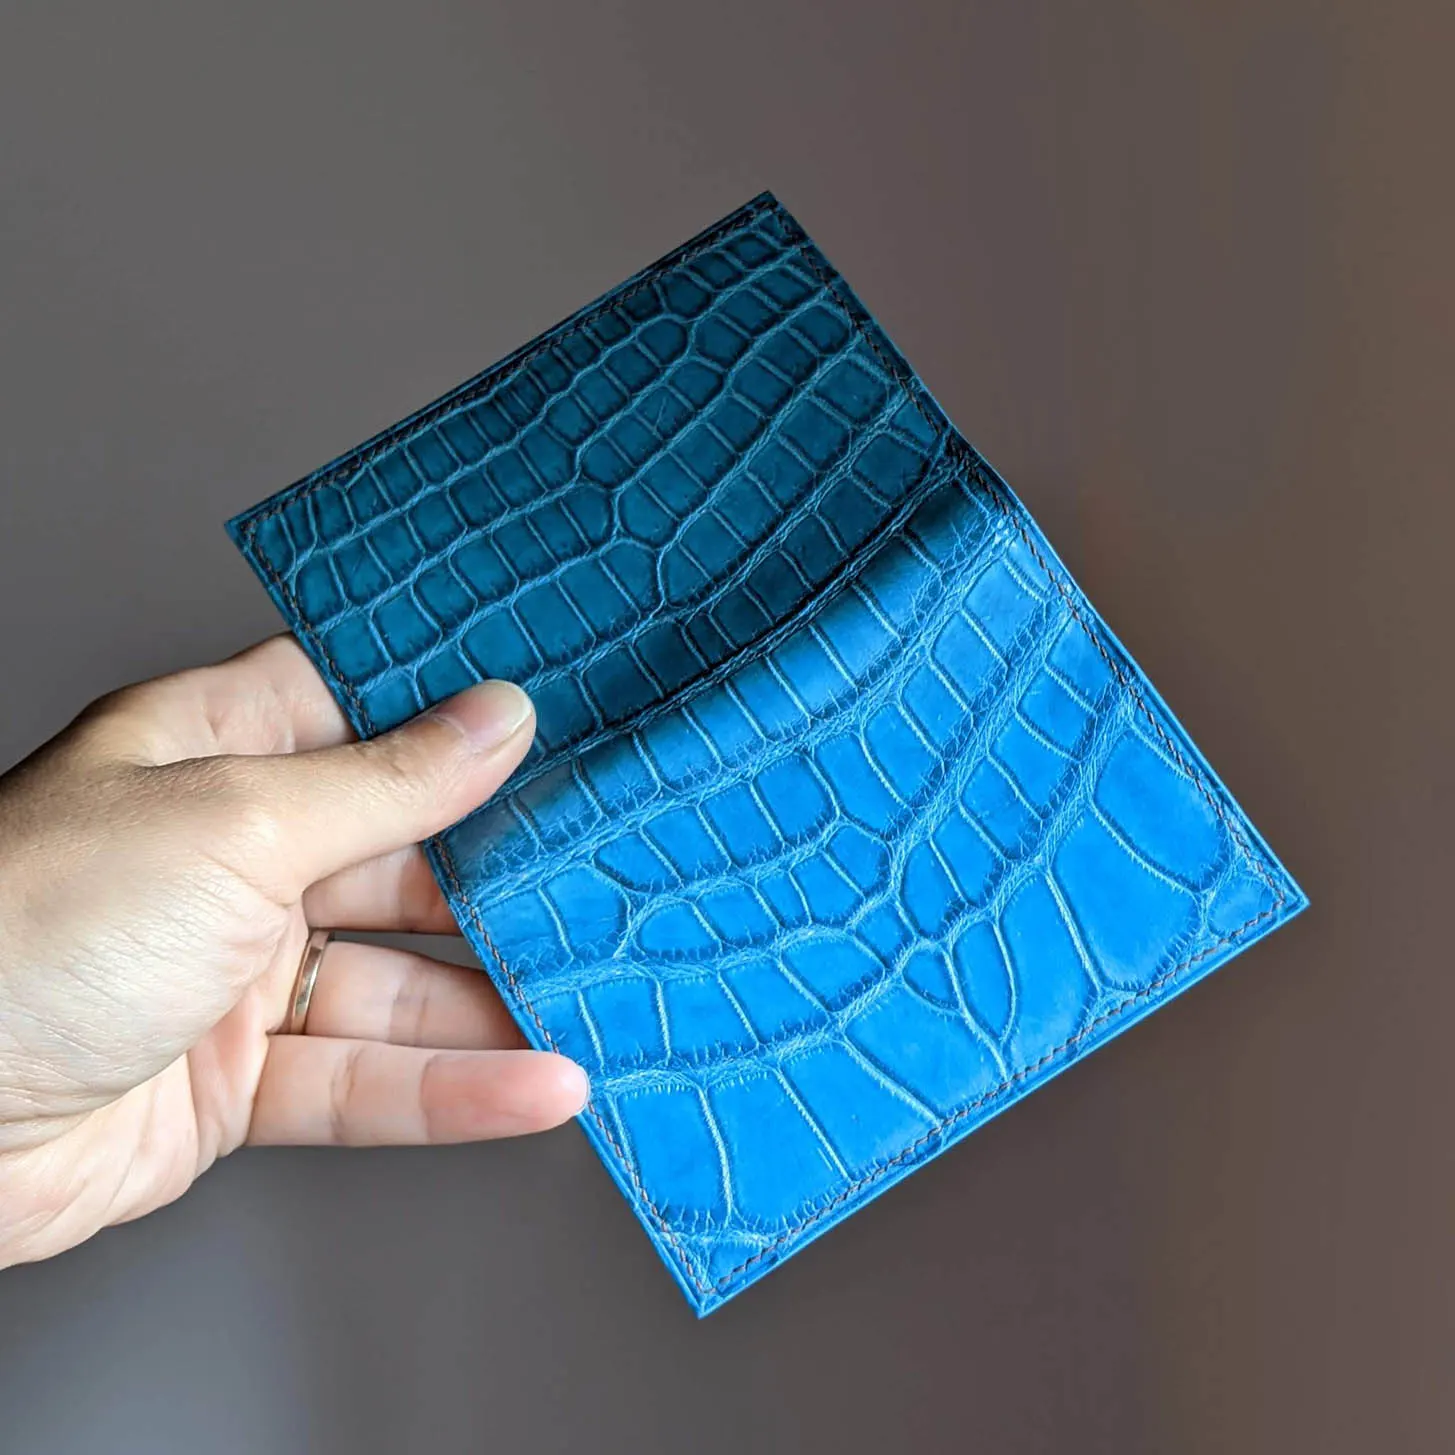 possala designs blue custom wallet